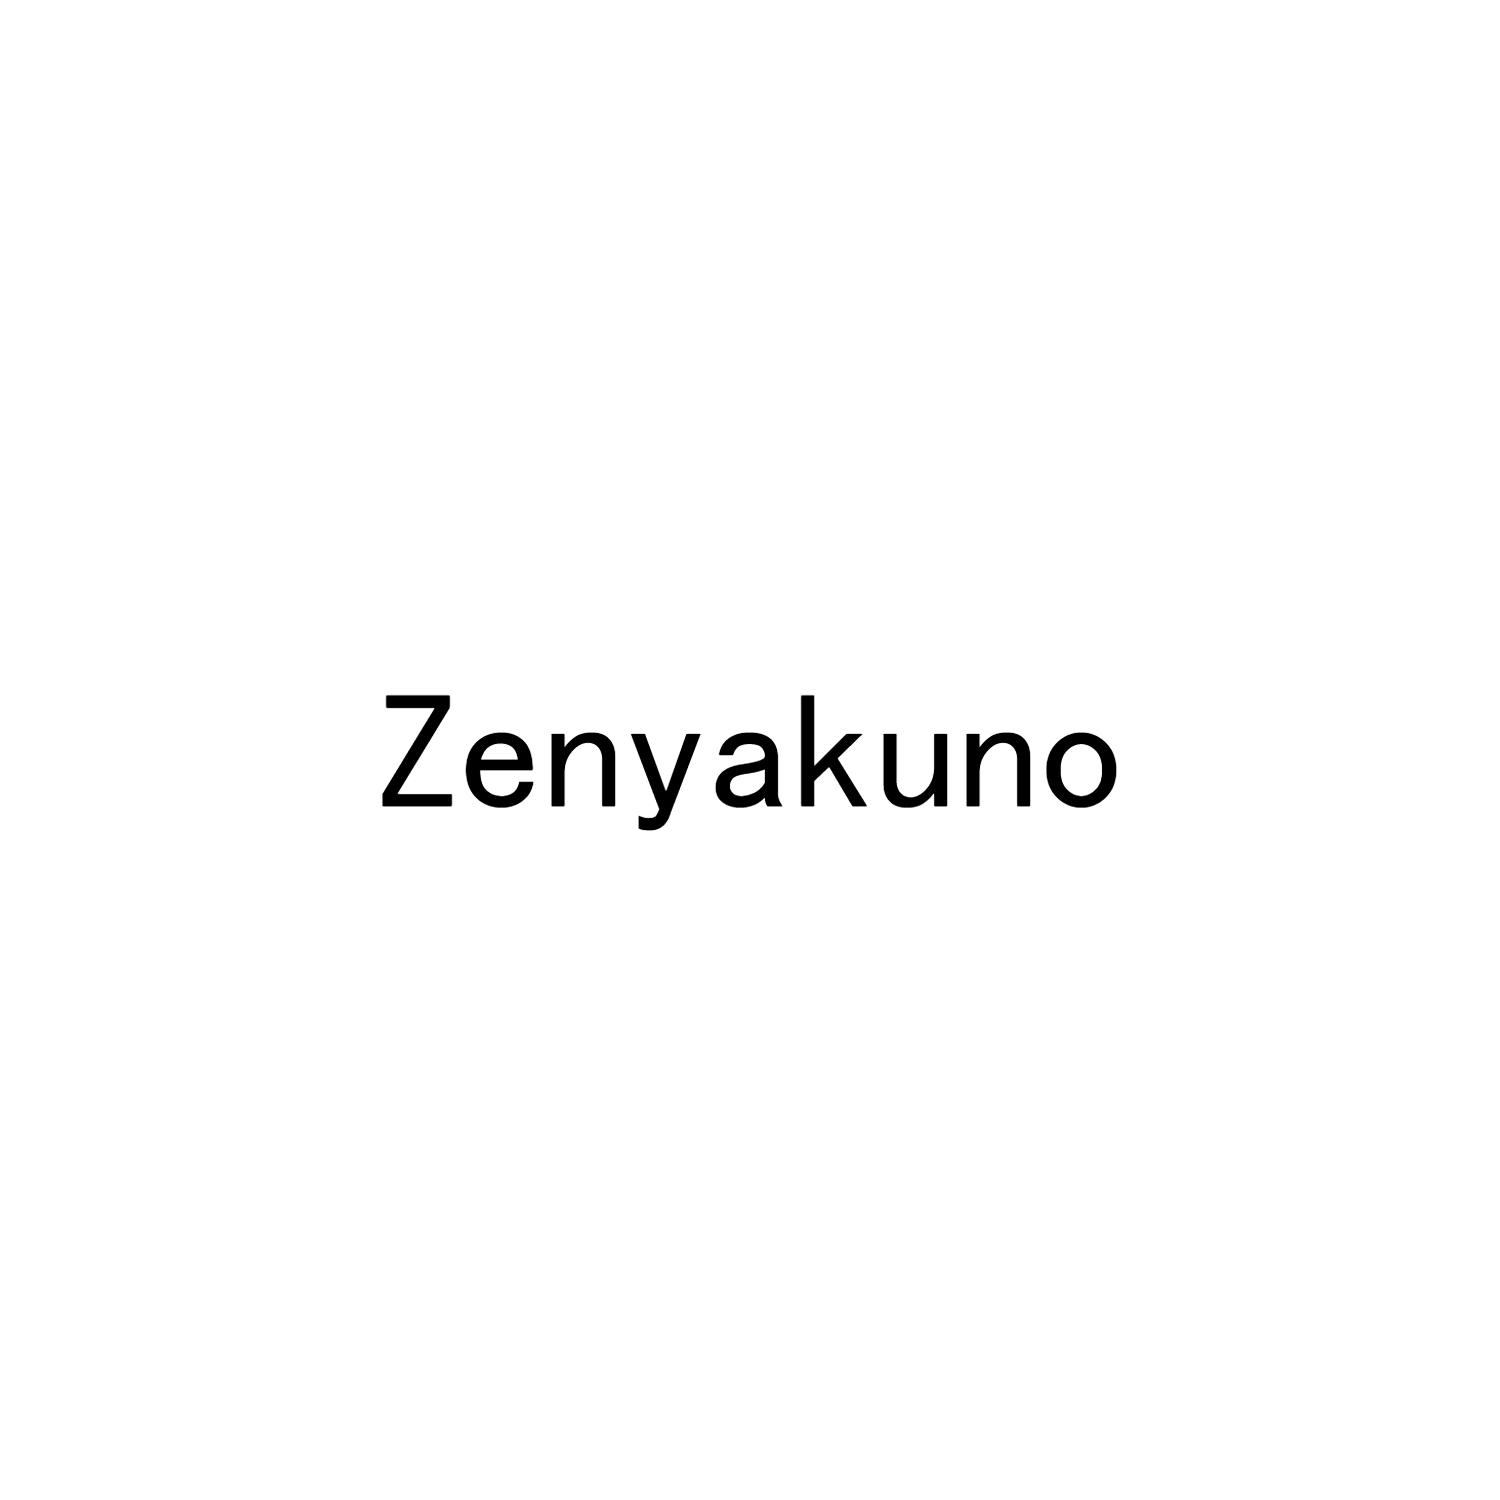 ZENYAKUNO